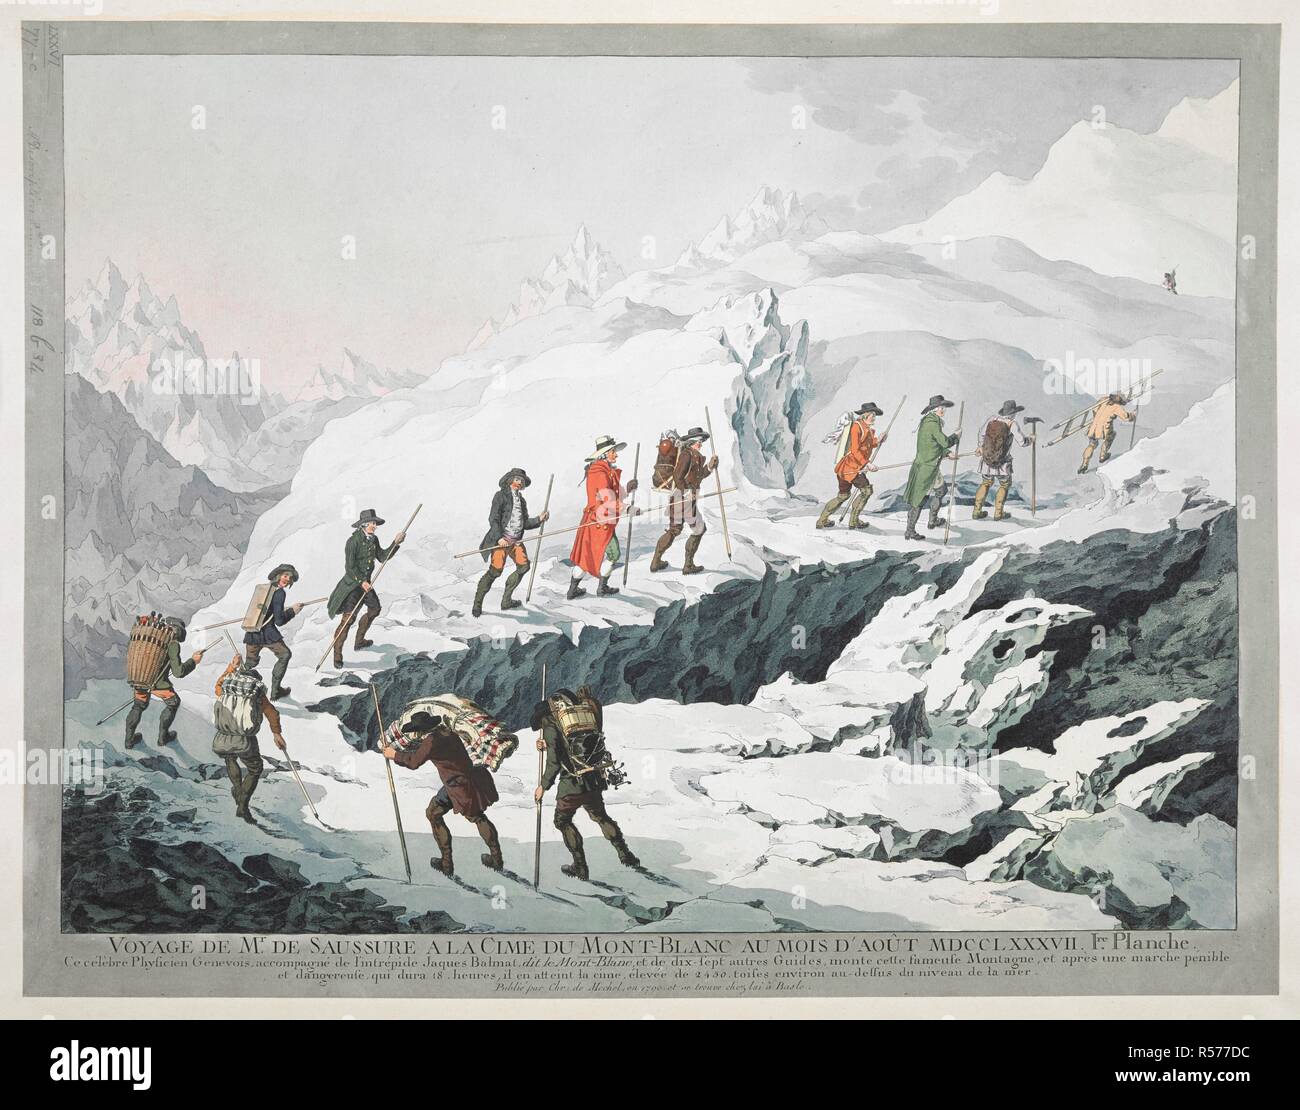 Horace BÃ©nÃ©dict.de Saussure und seine Führer traverse ein Gletscher mit Stöcken und Ausrüstung im Vordergrund, mit den Alpen im Hintergrund; innerhalb waschen Grenze. Horace - BÃ©nÃ©dict.de Saussure war ein Schweizer Aristokraten, Physiker und Alpine Traveller, der oft als der Gründer des Alpinismus. VOYAGE DE M.r DE SAUSSURE A LA CIME DU MONT-BLANC AU MOIS D'AOÃ'T MDCCLXXXVII: Ce Cà©lÃ¨bre Physicien Genevois, accompagnÃ© de l'intrÃ © pide Jacques Balmat, dit le Mont-Blanc, et de dix-sept autres Guides, Monte cette fameuse Montagne, et Après-ski une Marche penible et dangereuse, qui Dura 18 Heures Stockfoto